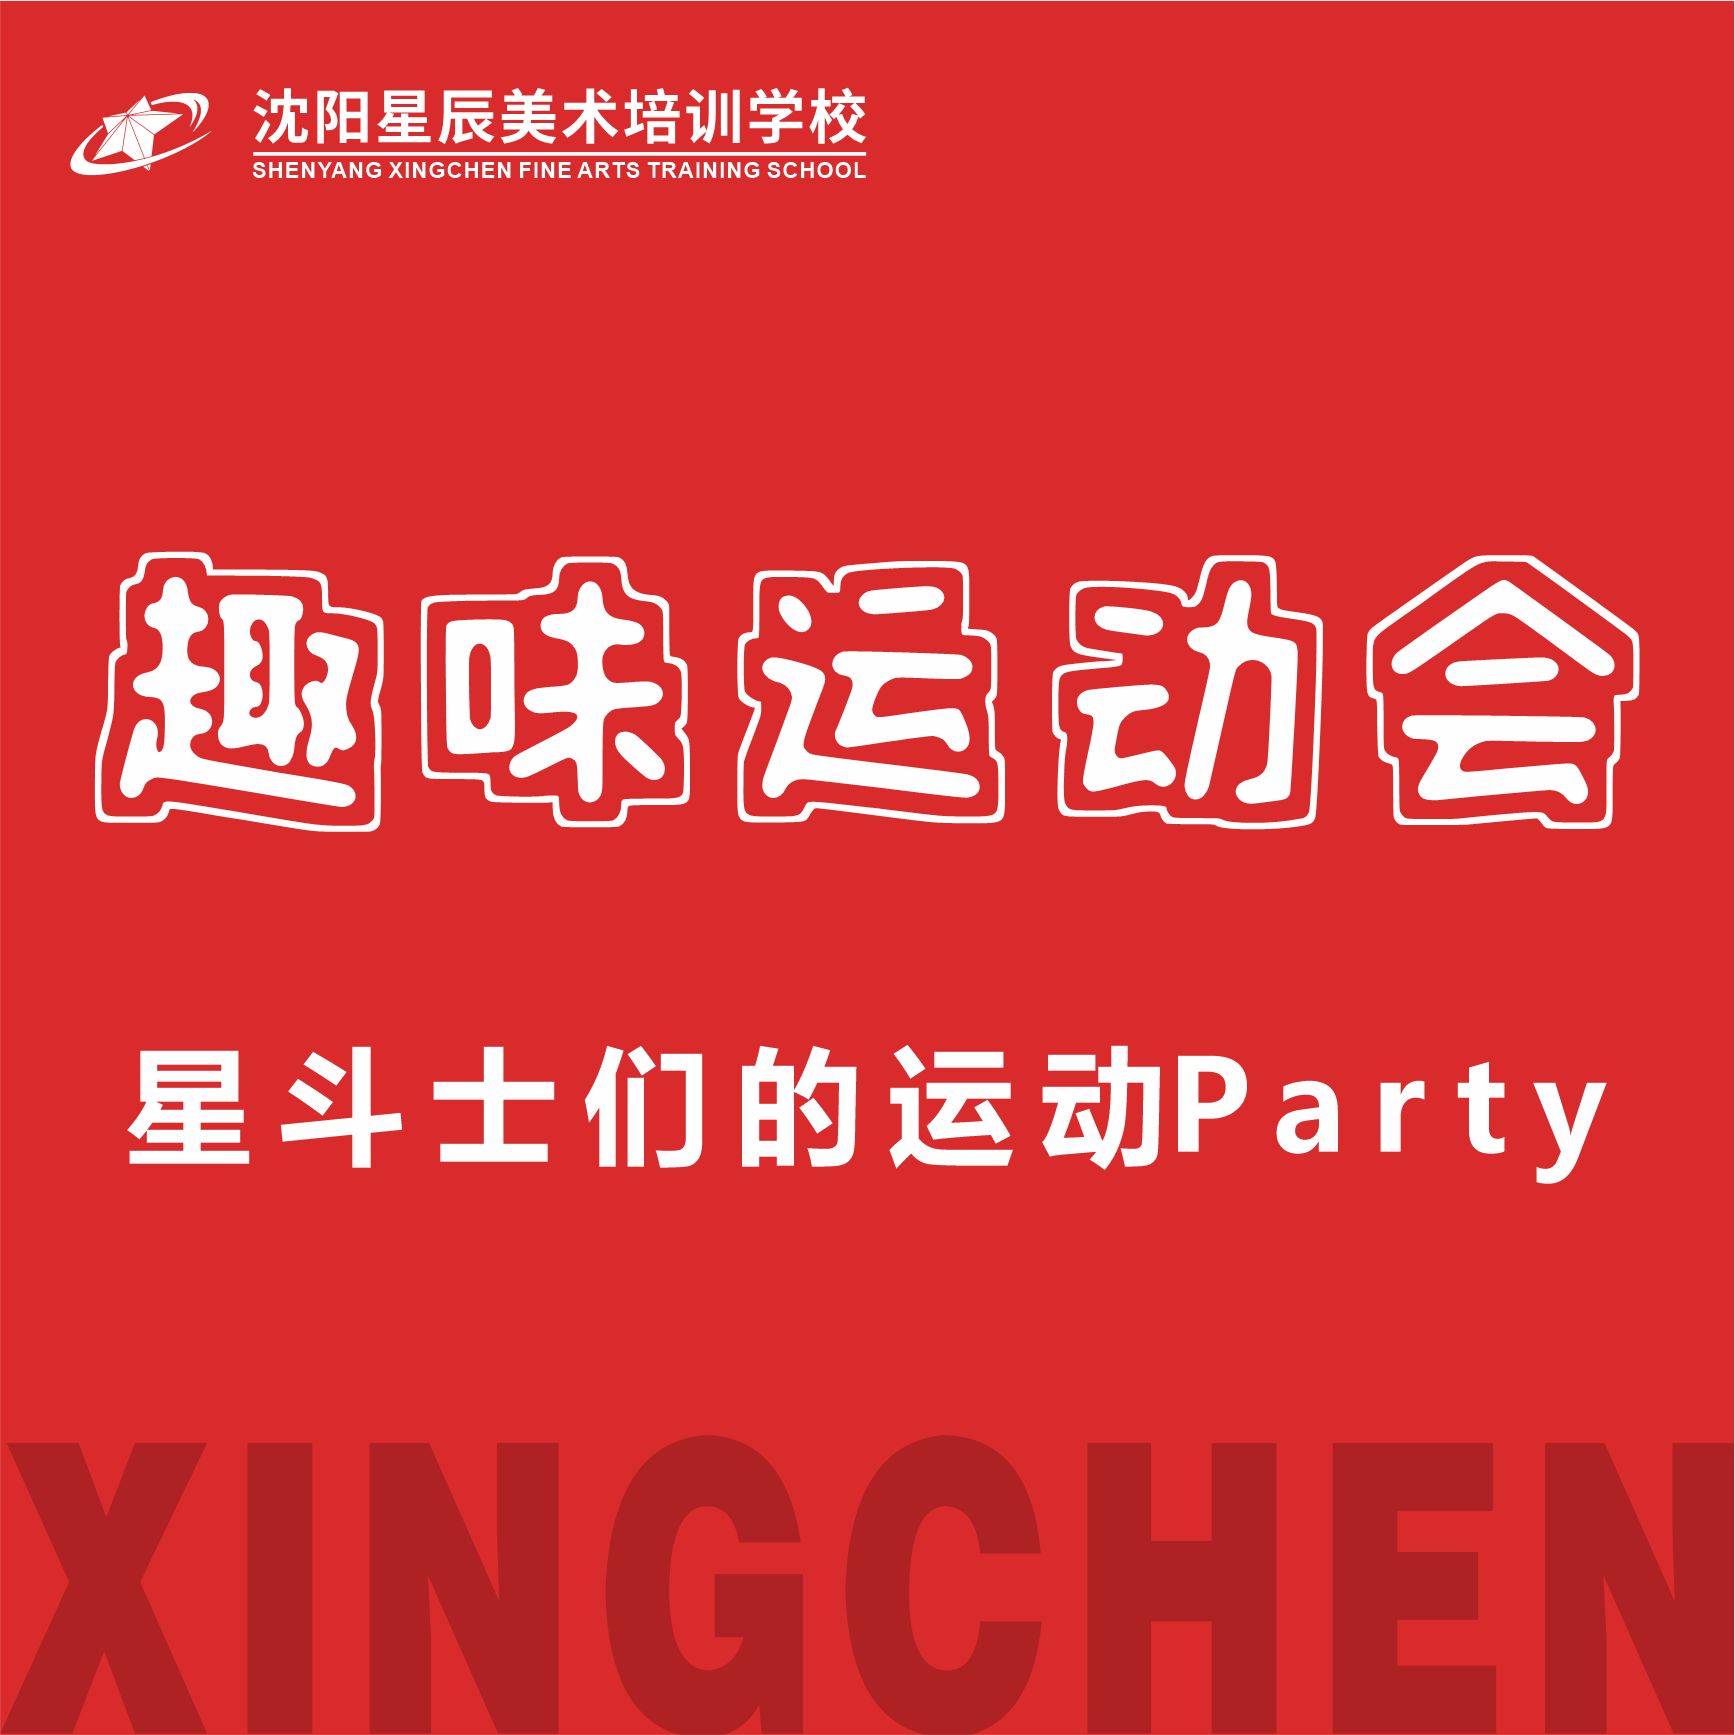 黑龙江星斗士们的运动Party ——沈阳星辰美术培训学校2022届趣味运动会